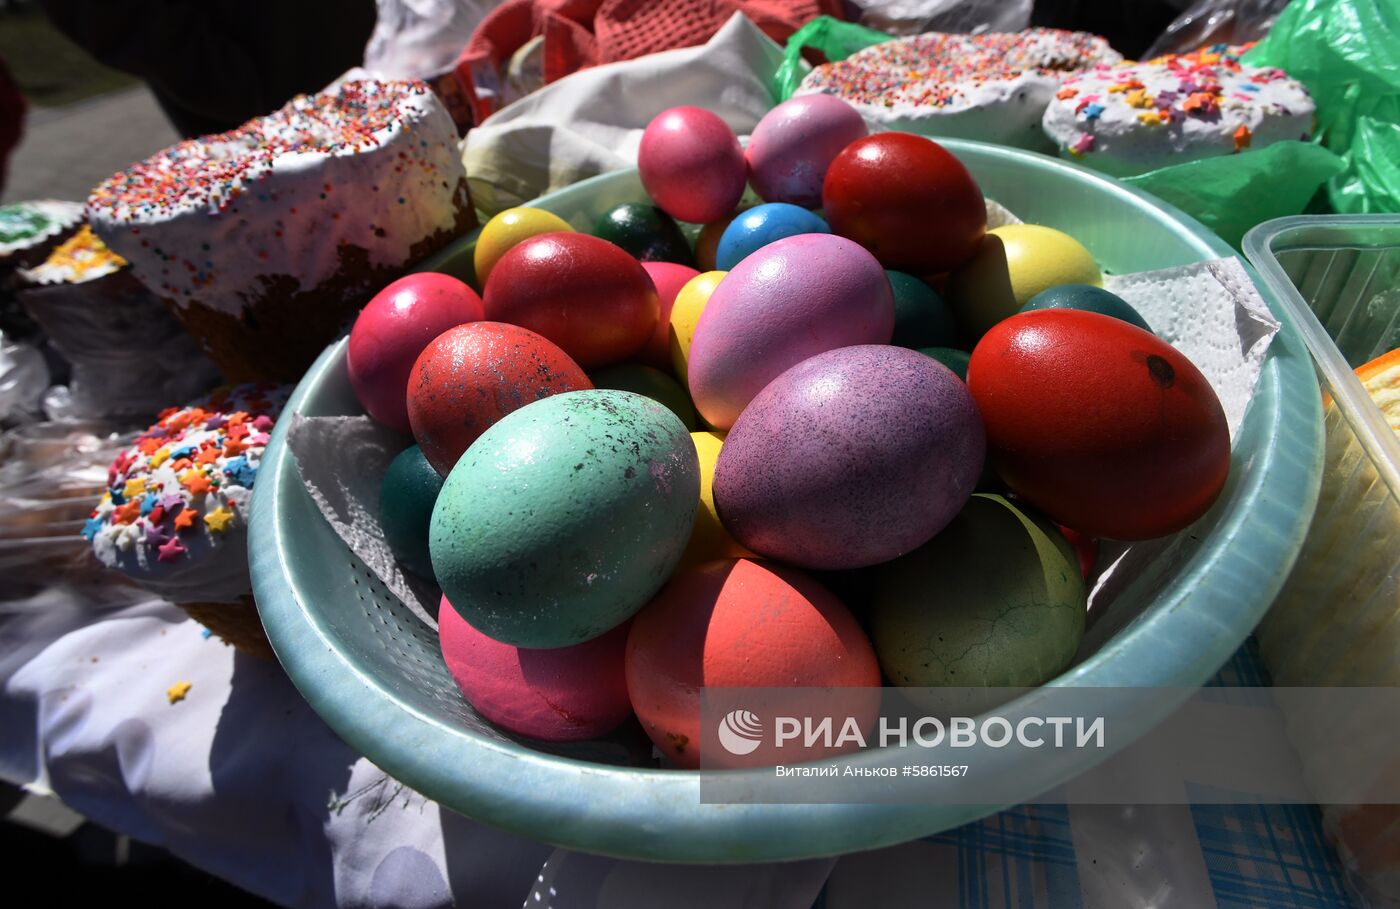 Освящение пасхальных куличей и яиц в Великую субботу